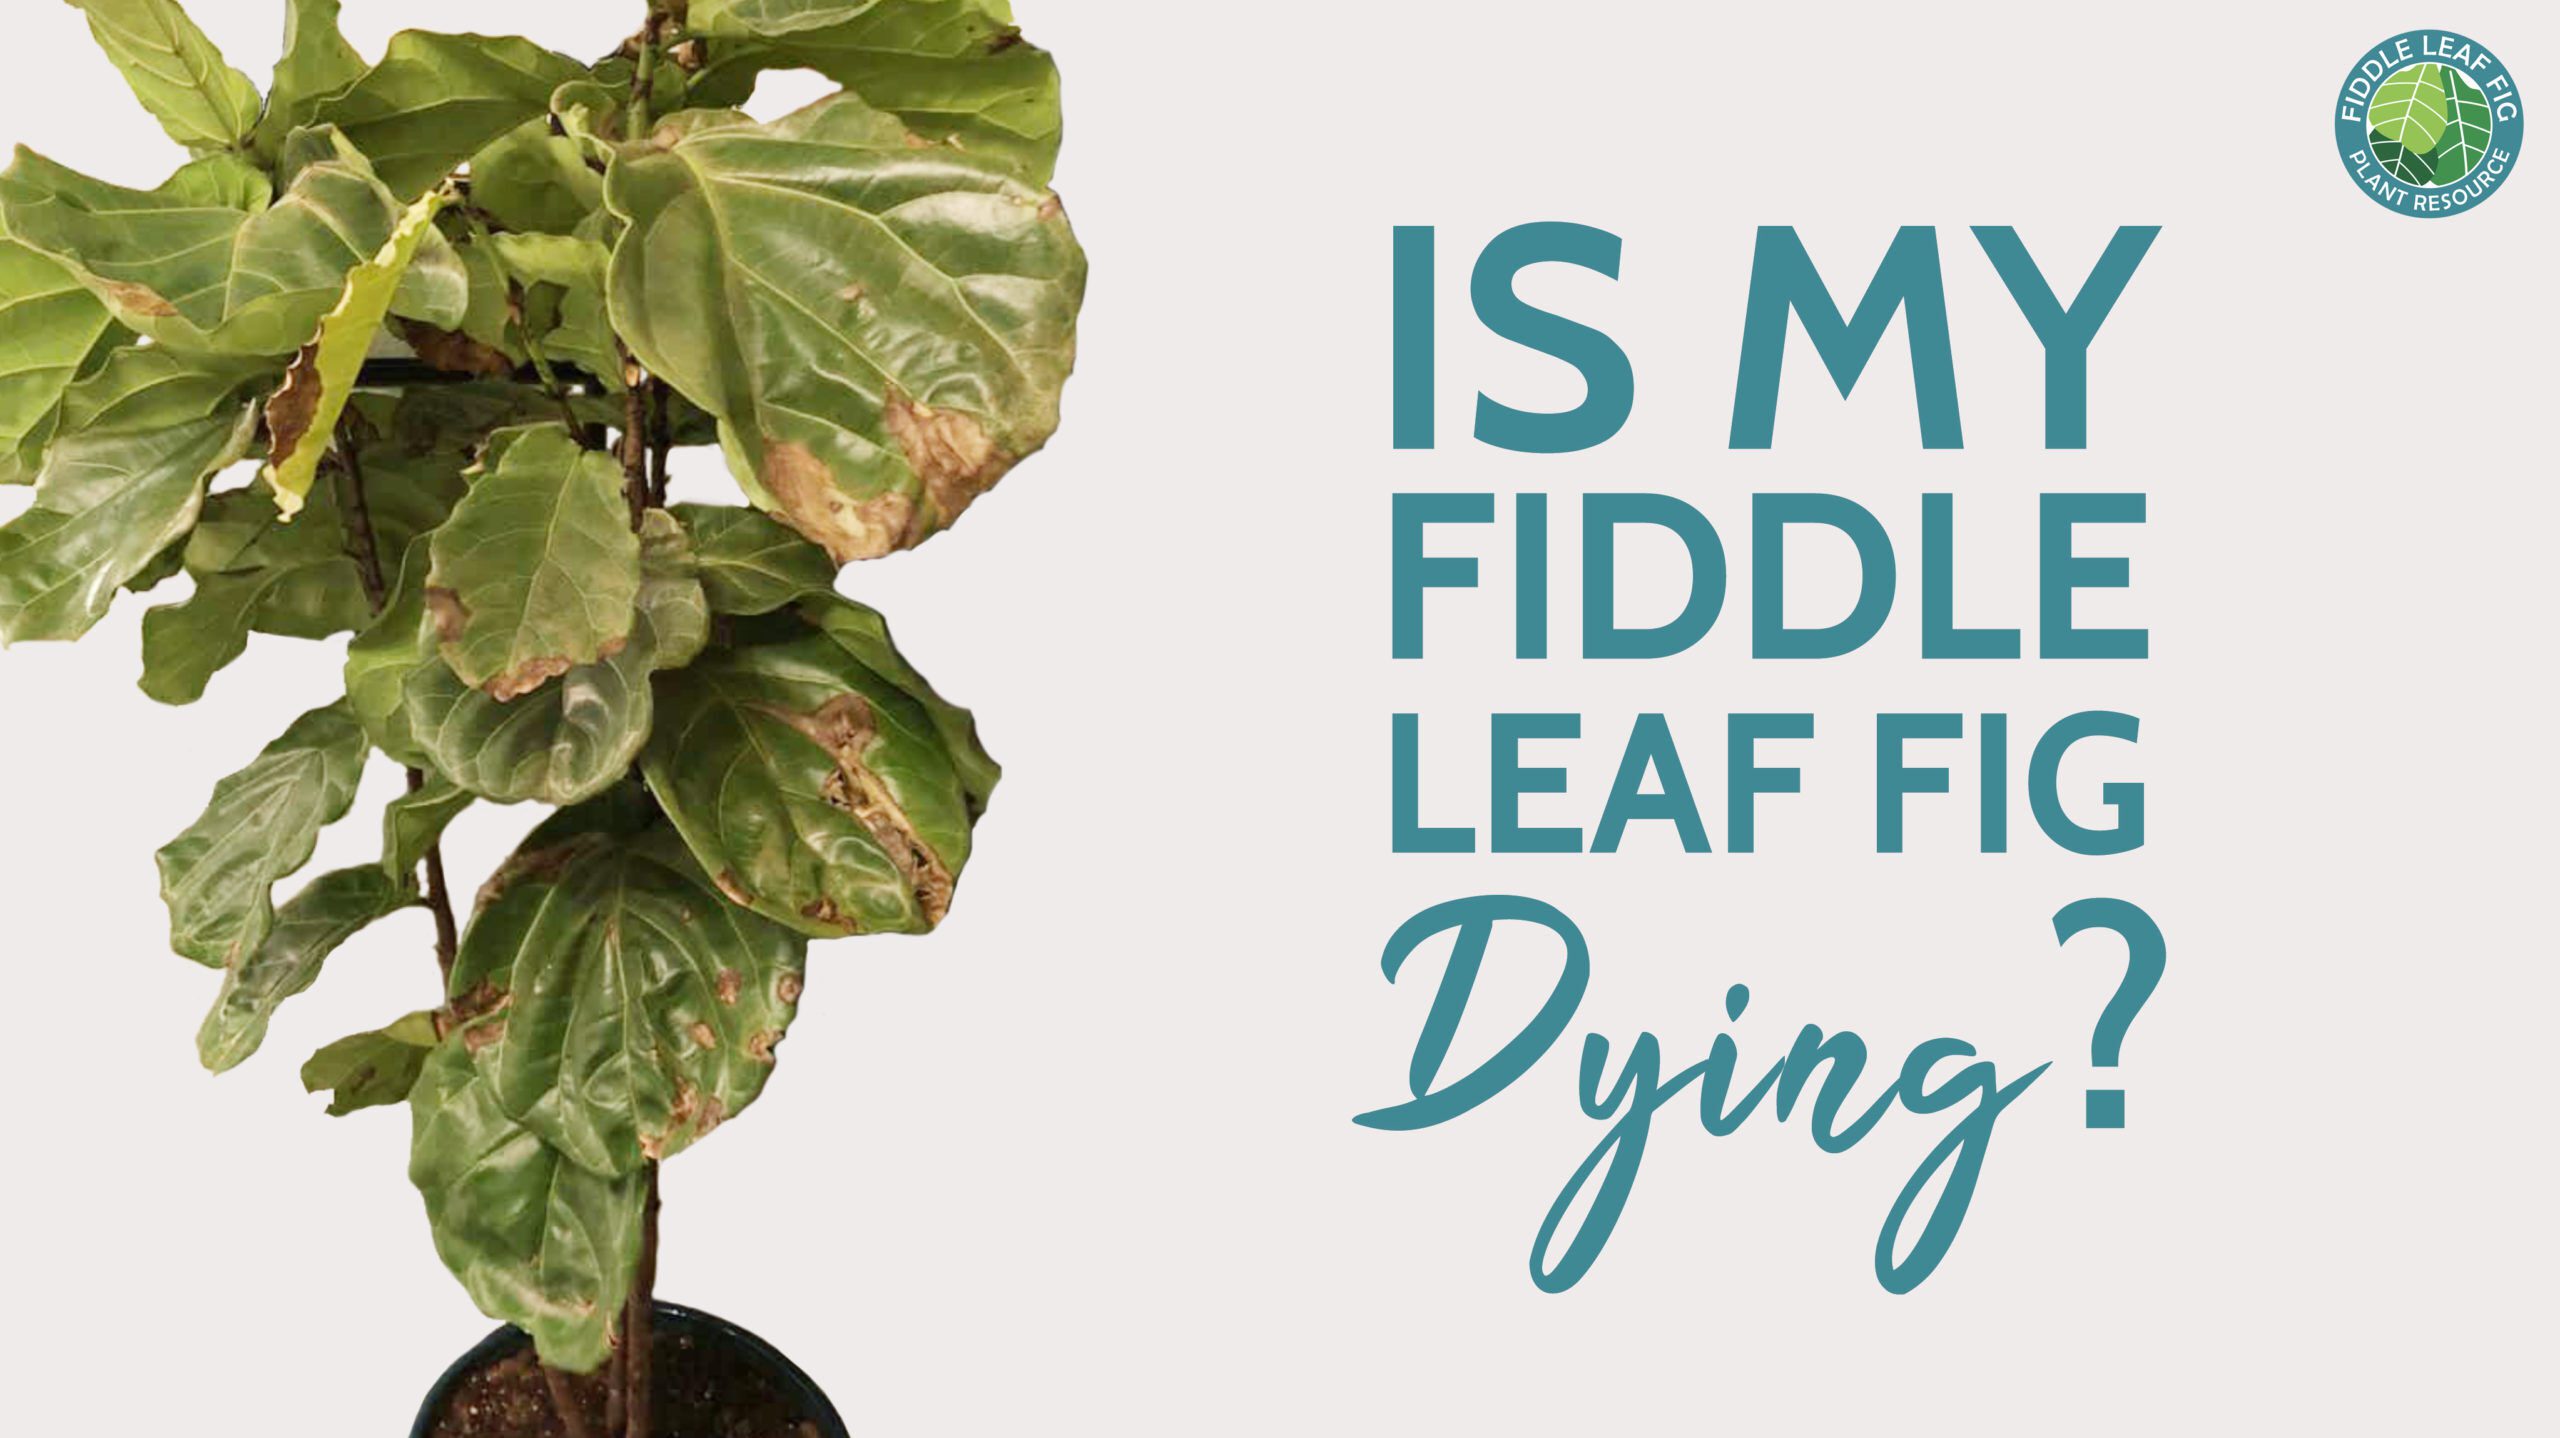 Fiddle leaf fig notching